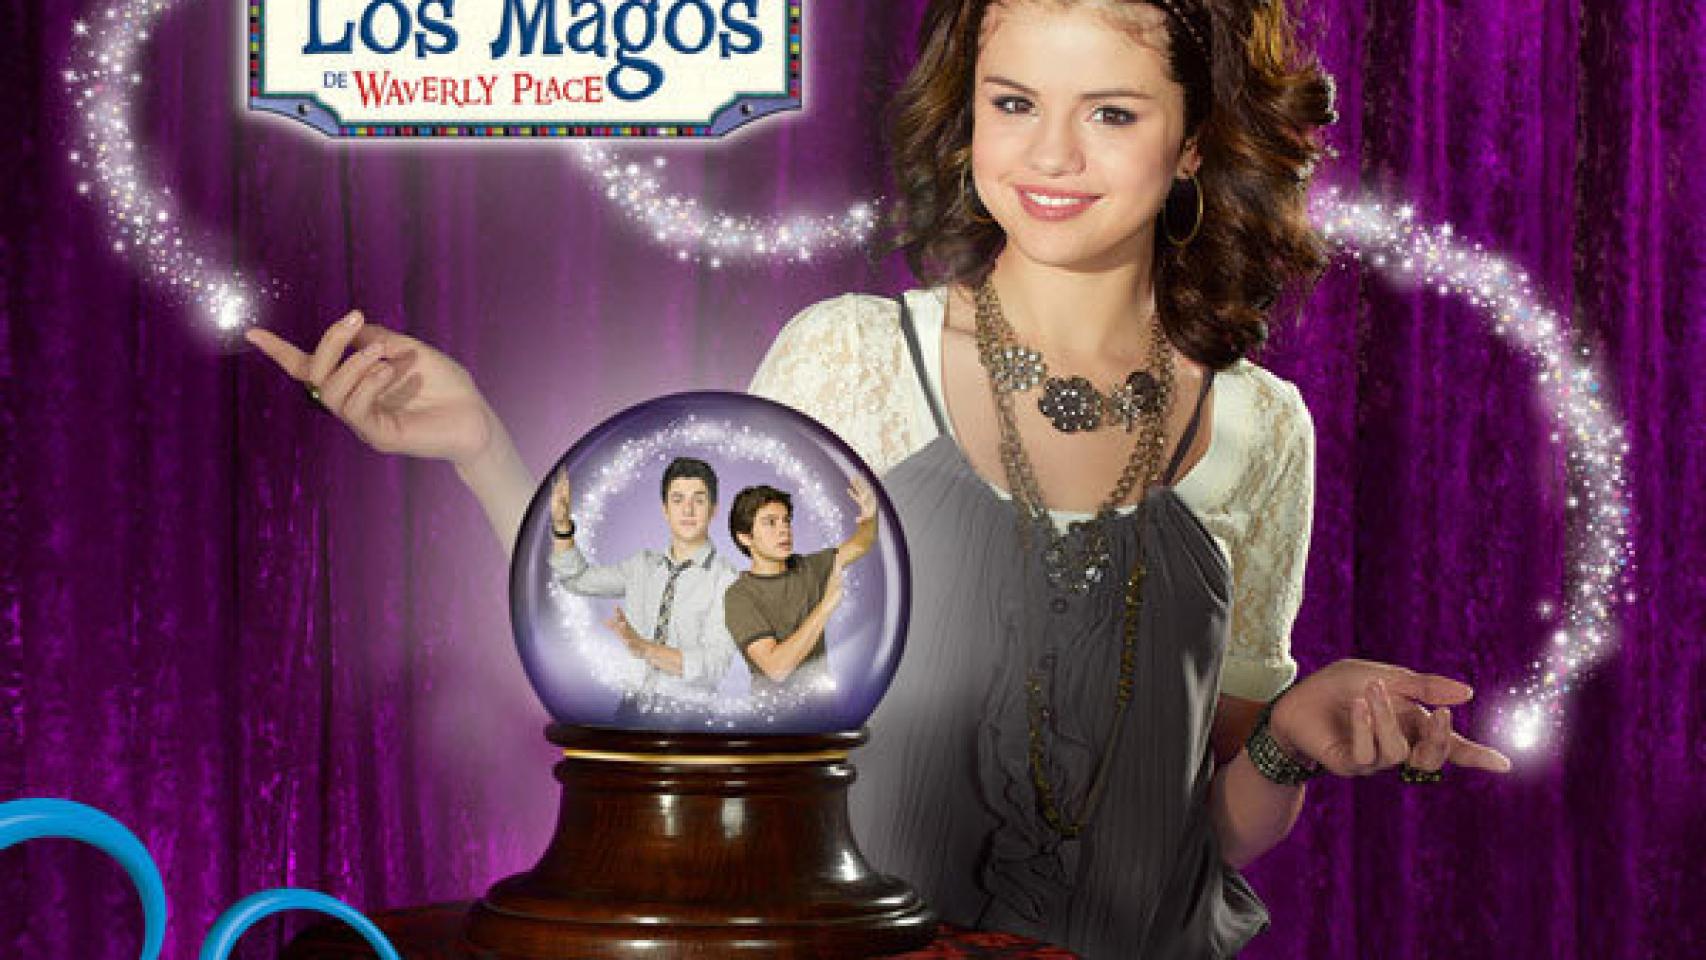 'Los magos de Waverly Place', una de las series emitidas por Disney Channel en España.